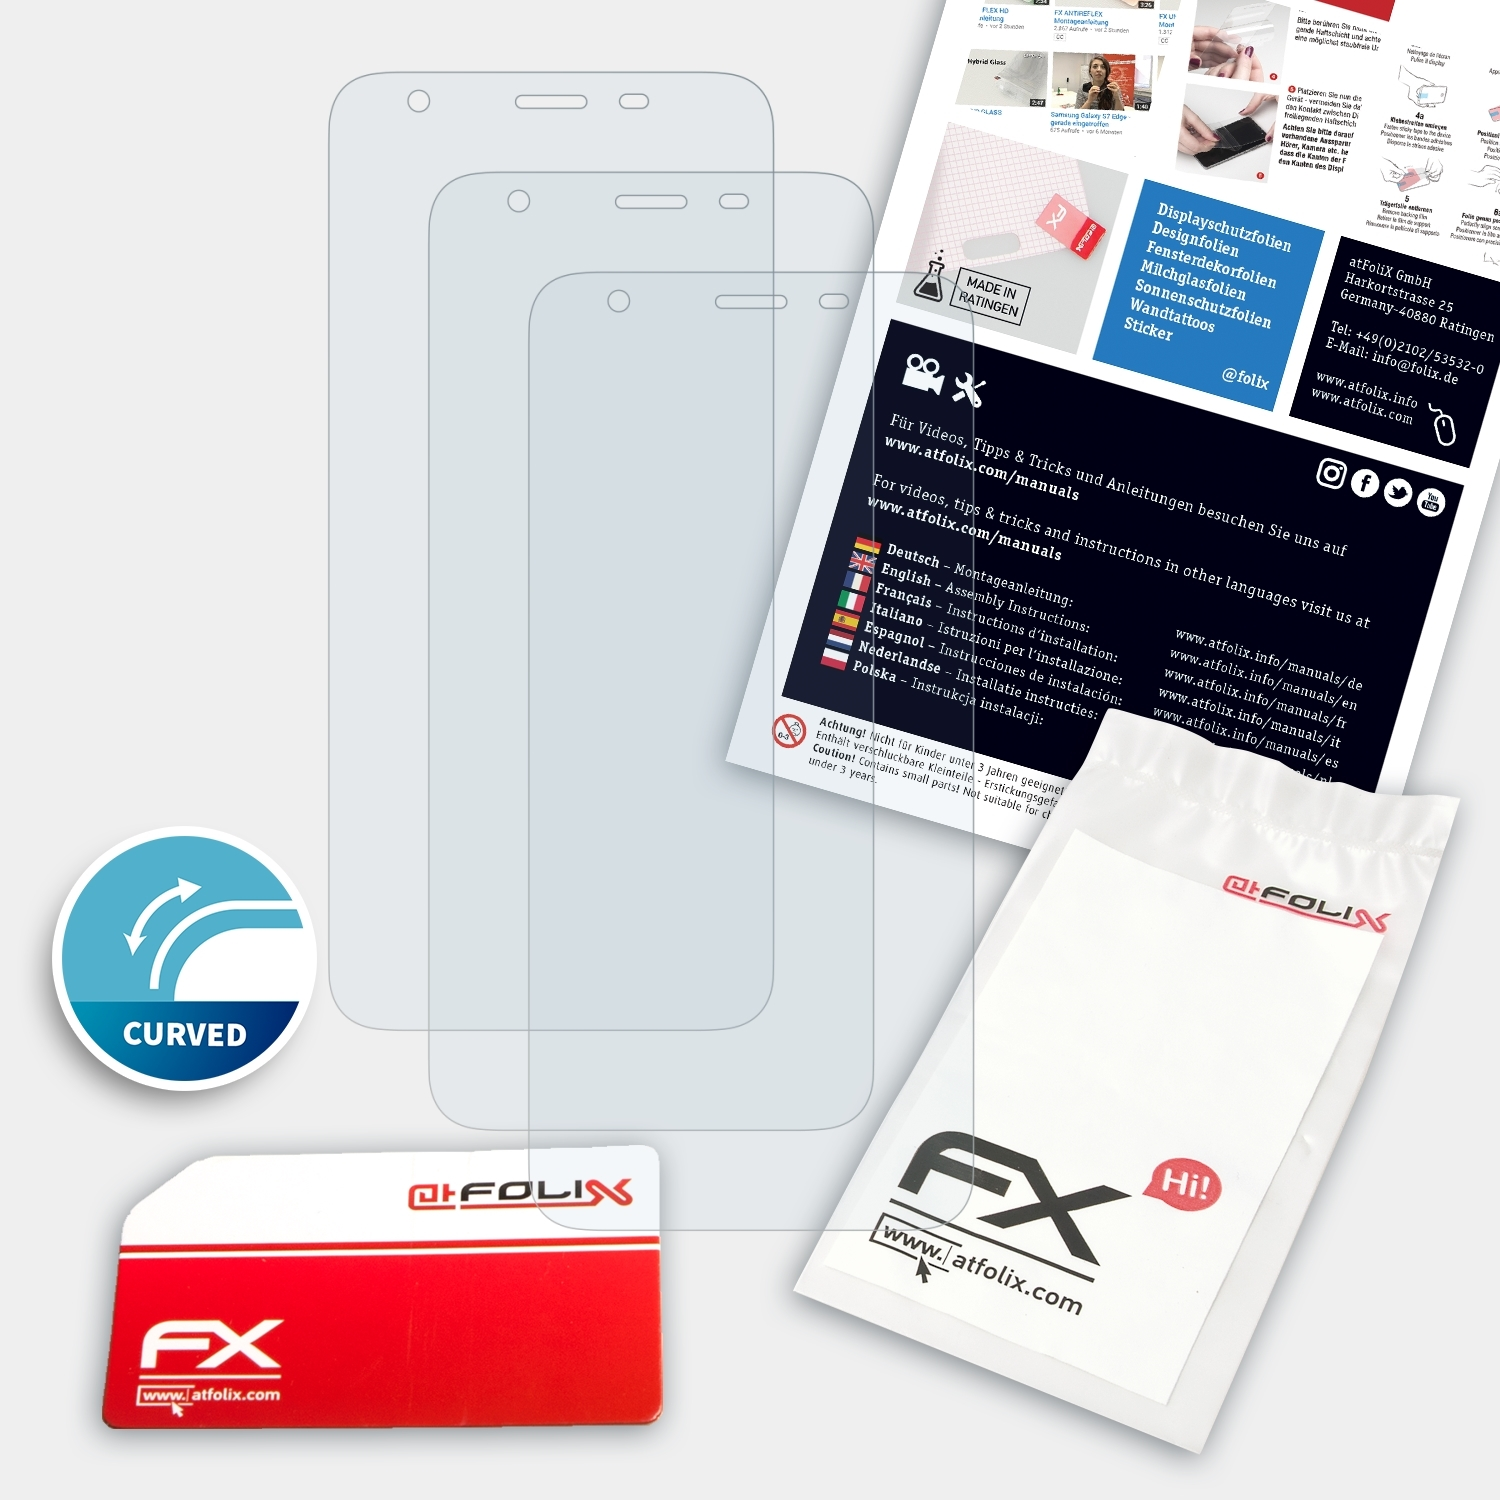 S9 FX-ActiFleX Pro) ATFOLIX Ulefone Displayschutz(für 3x